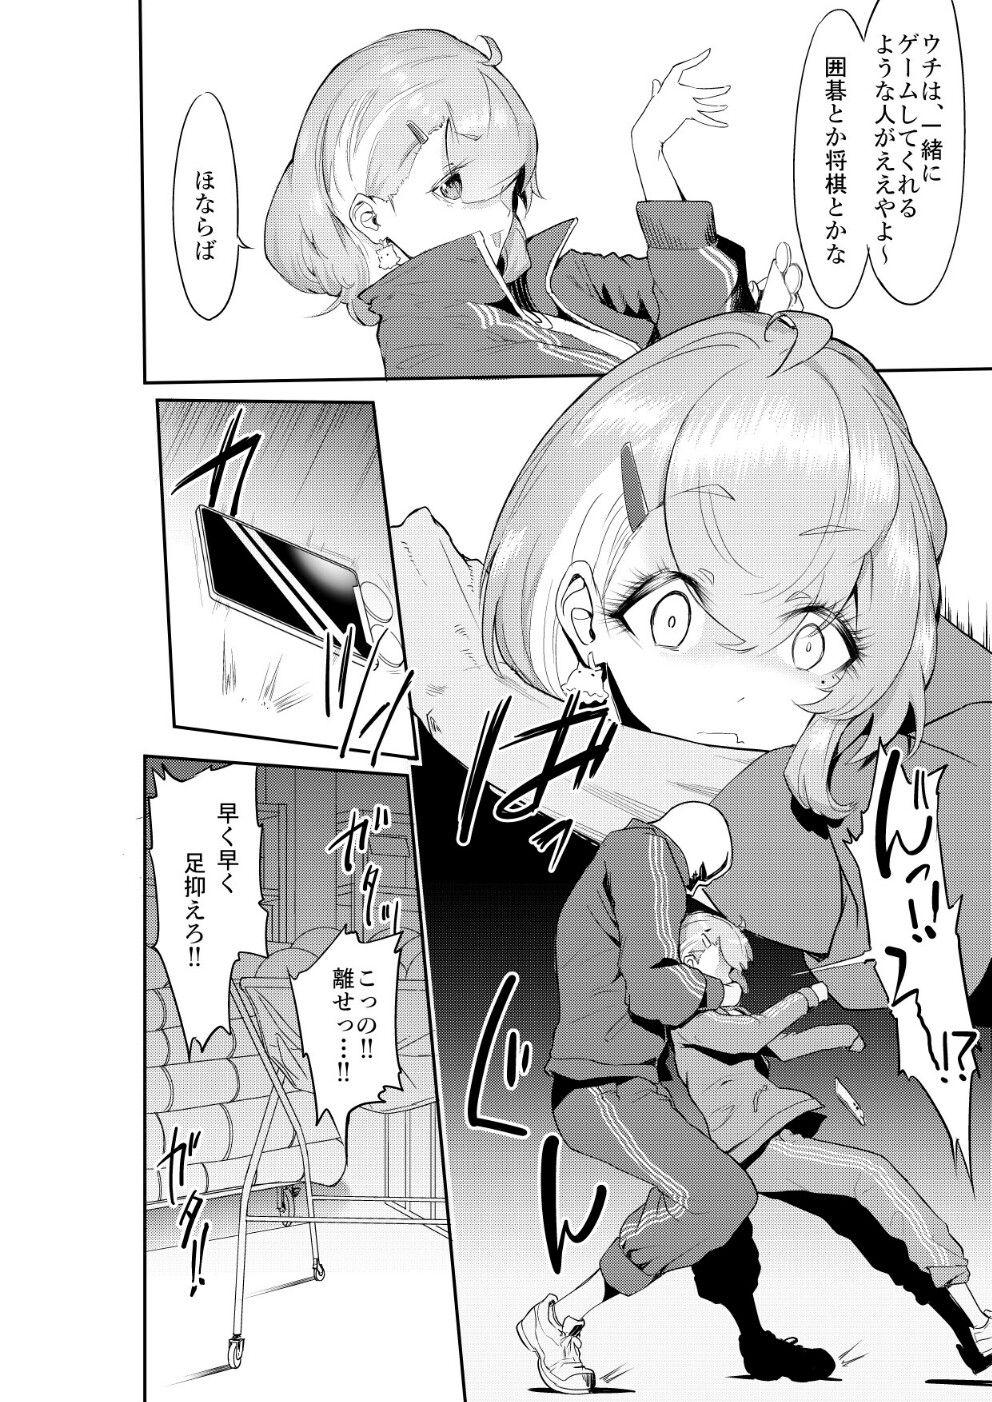 Mmf SS Manga - Nijisanji Athletic - Page 11